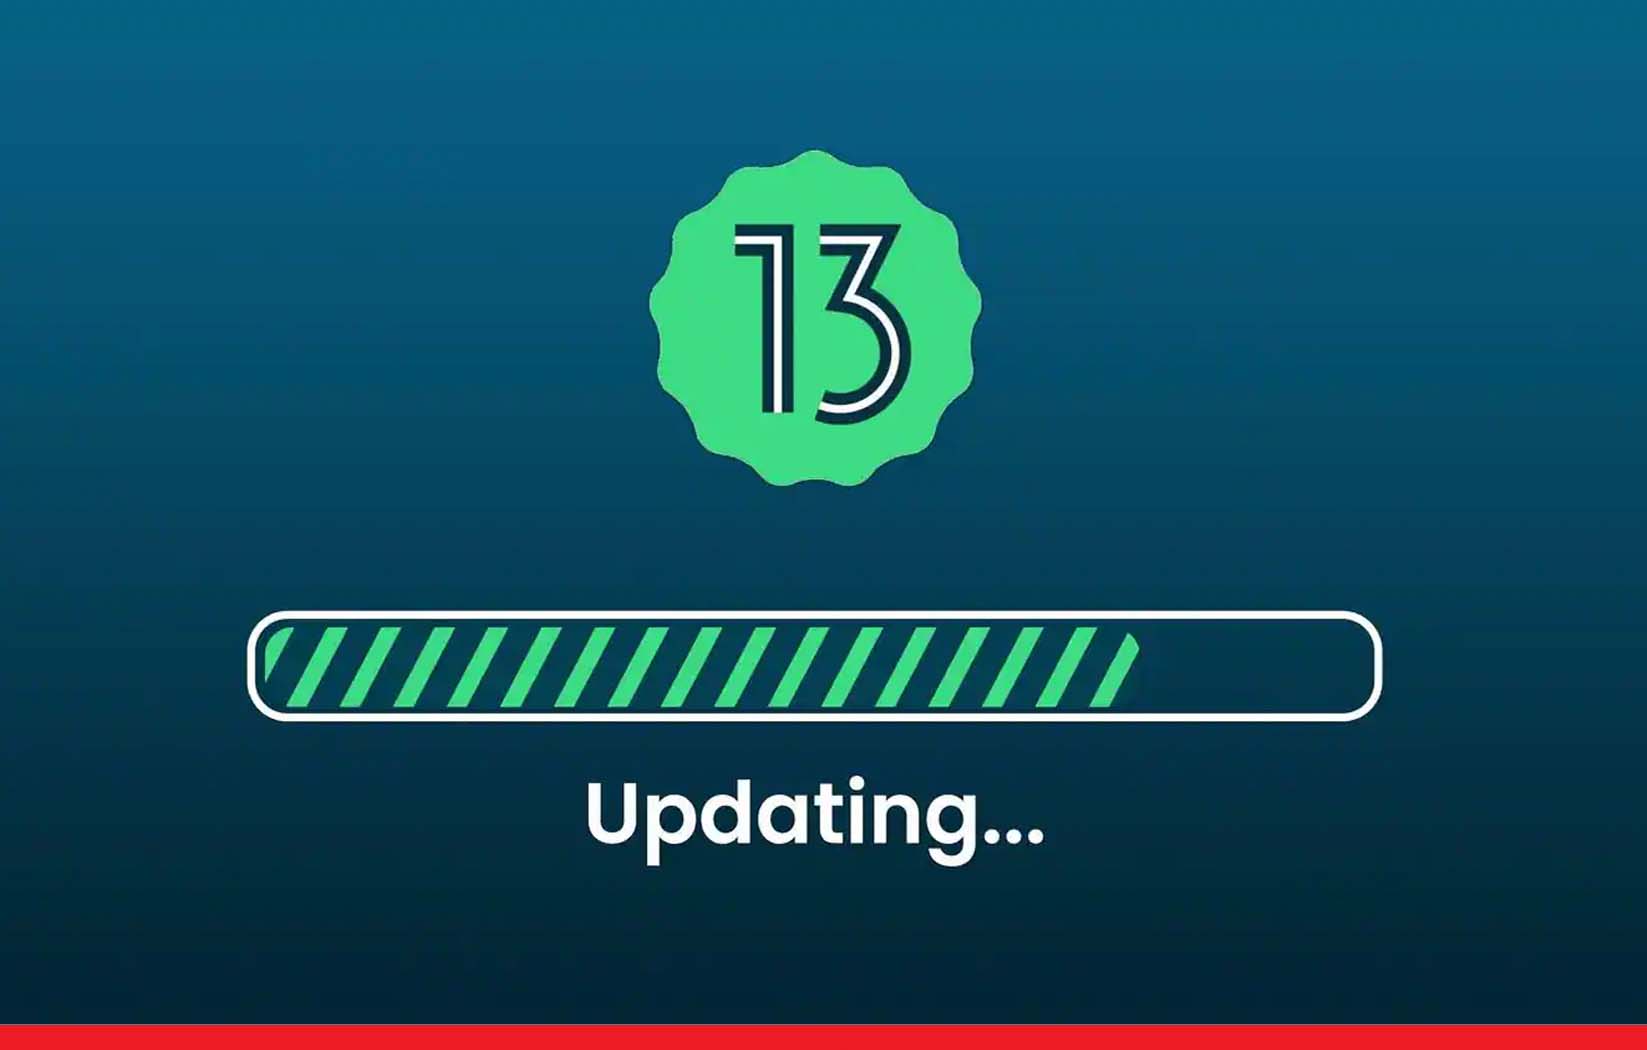 रिलीज़ हुआ एंड्रॉयड 13, नए फीचर्स के साथ पूरी तरह बदल जाएंगे आपके स्मार्टफोन